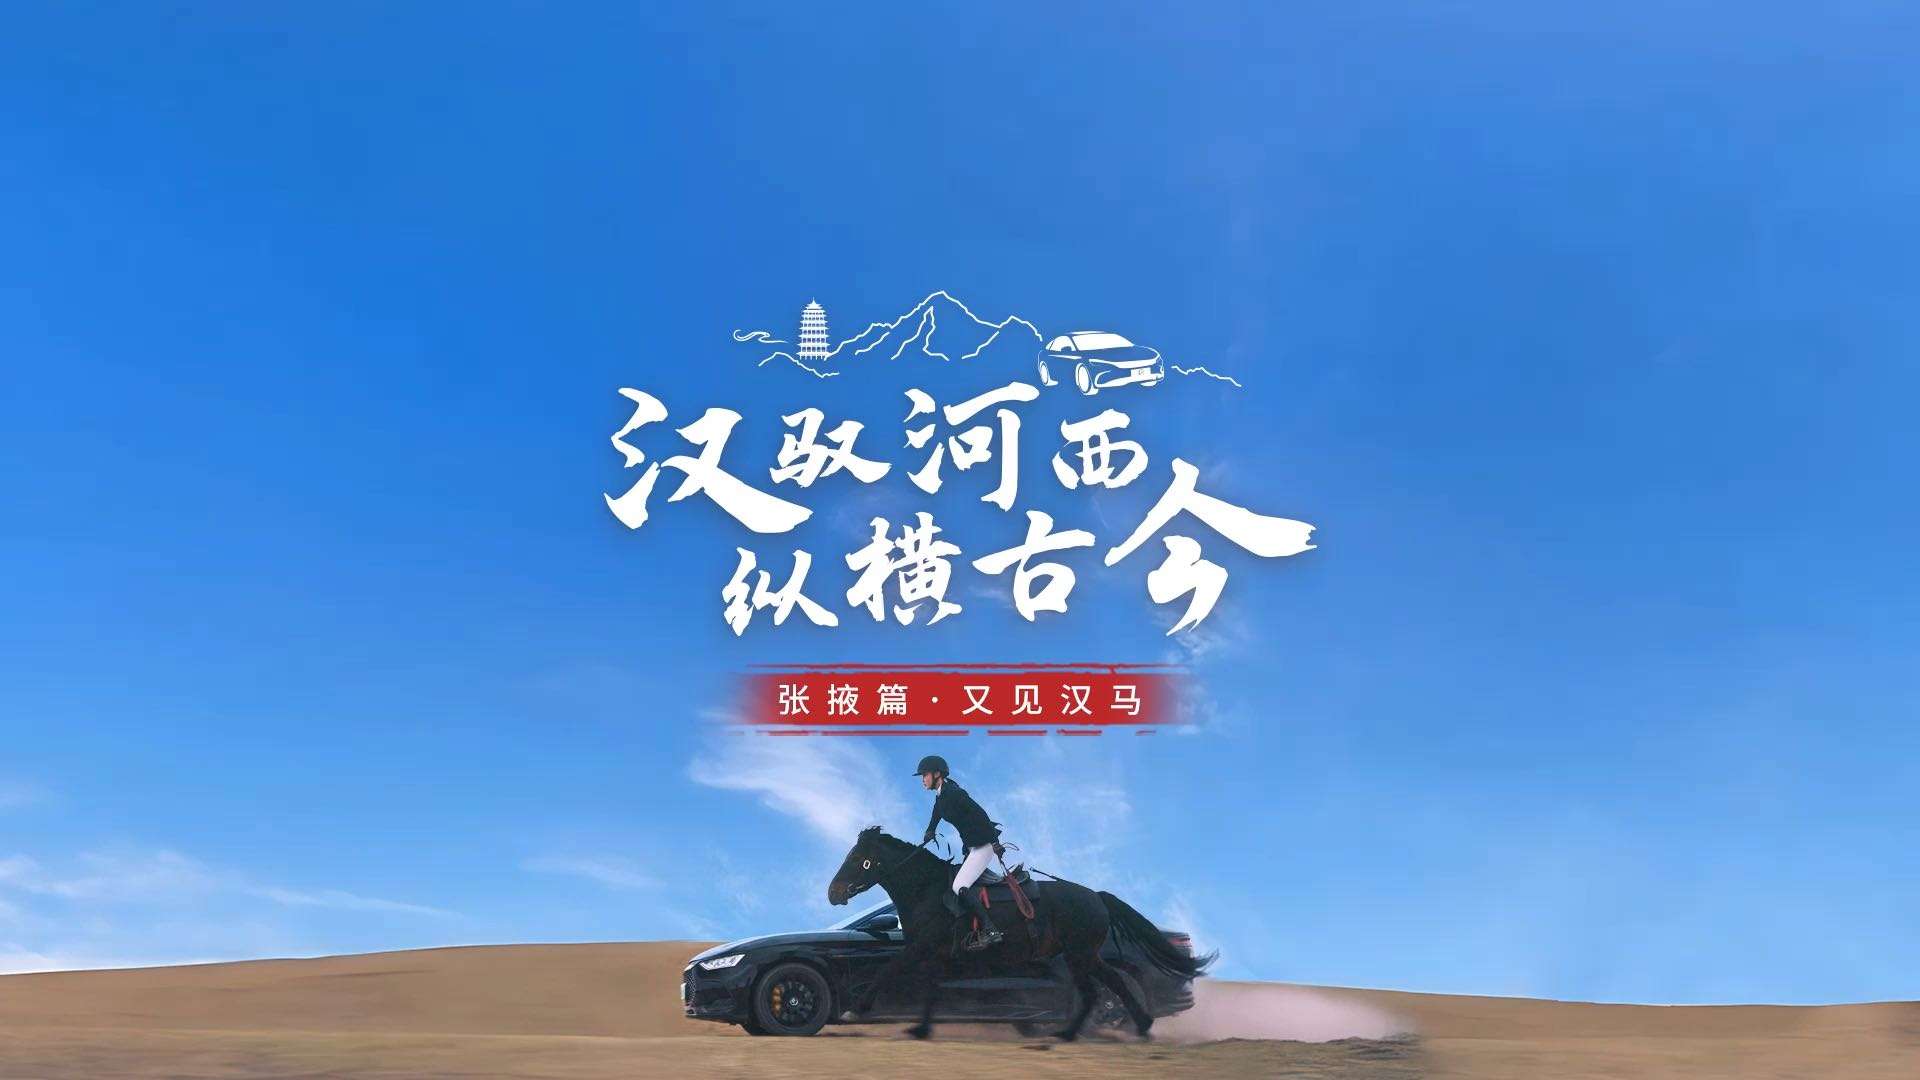 比亚迪汉系列纪录片 | 汉马篇